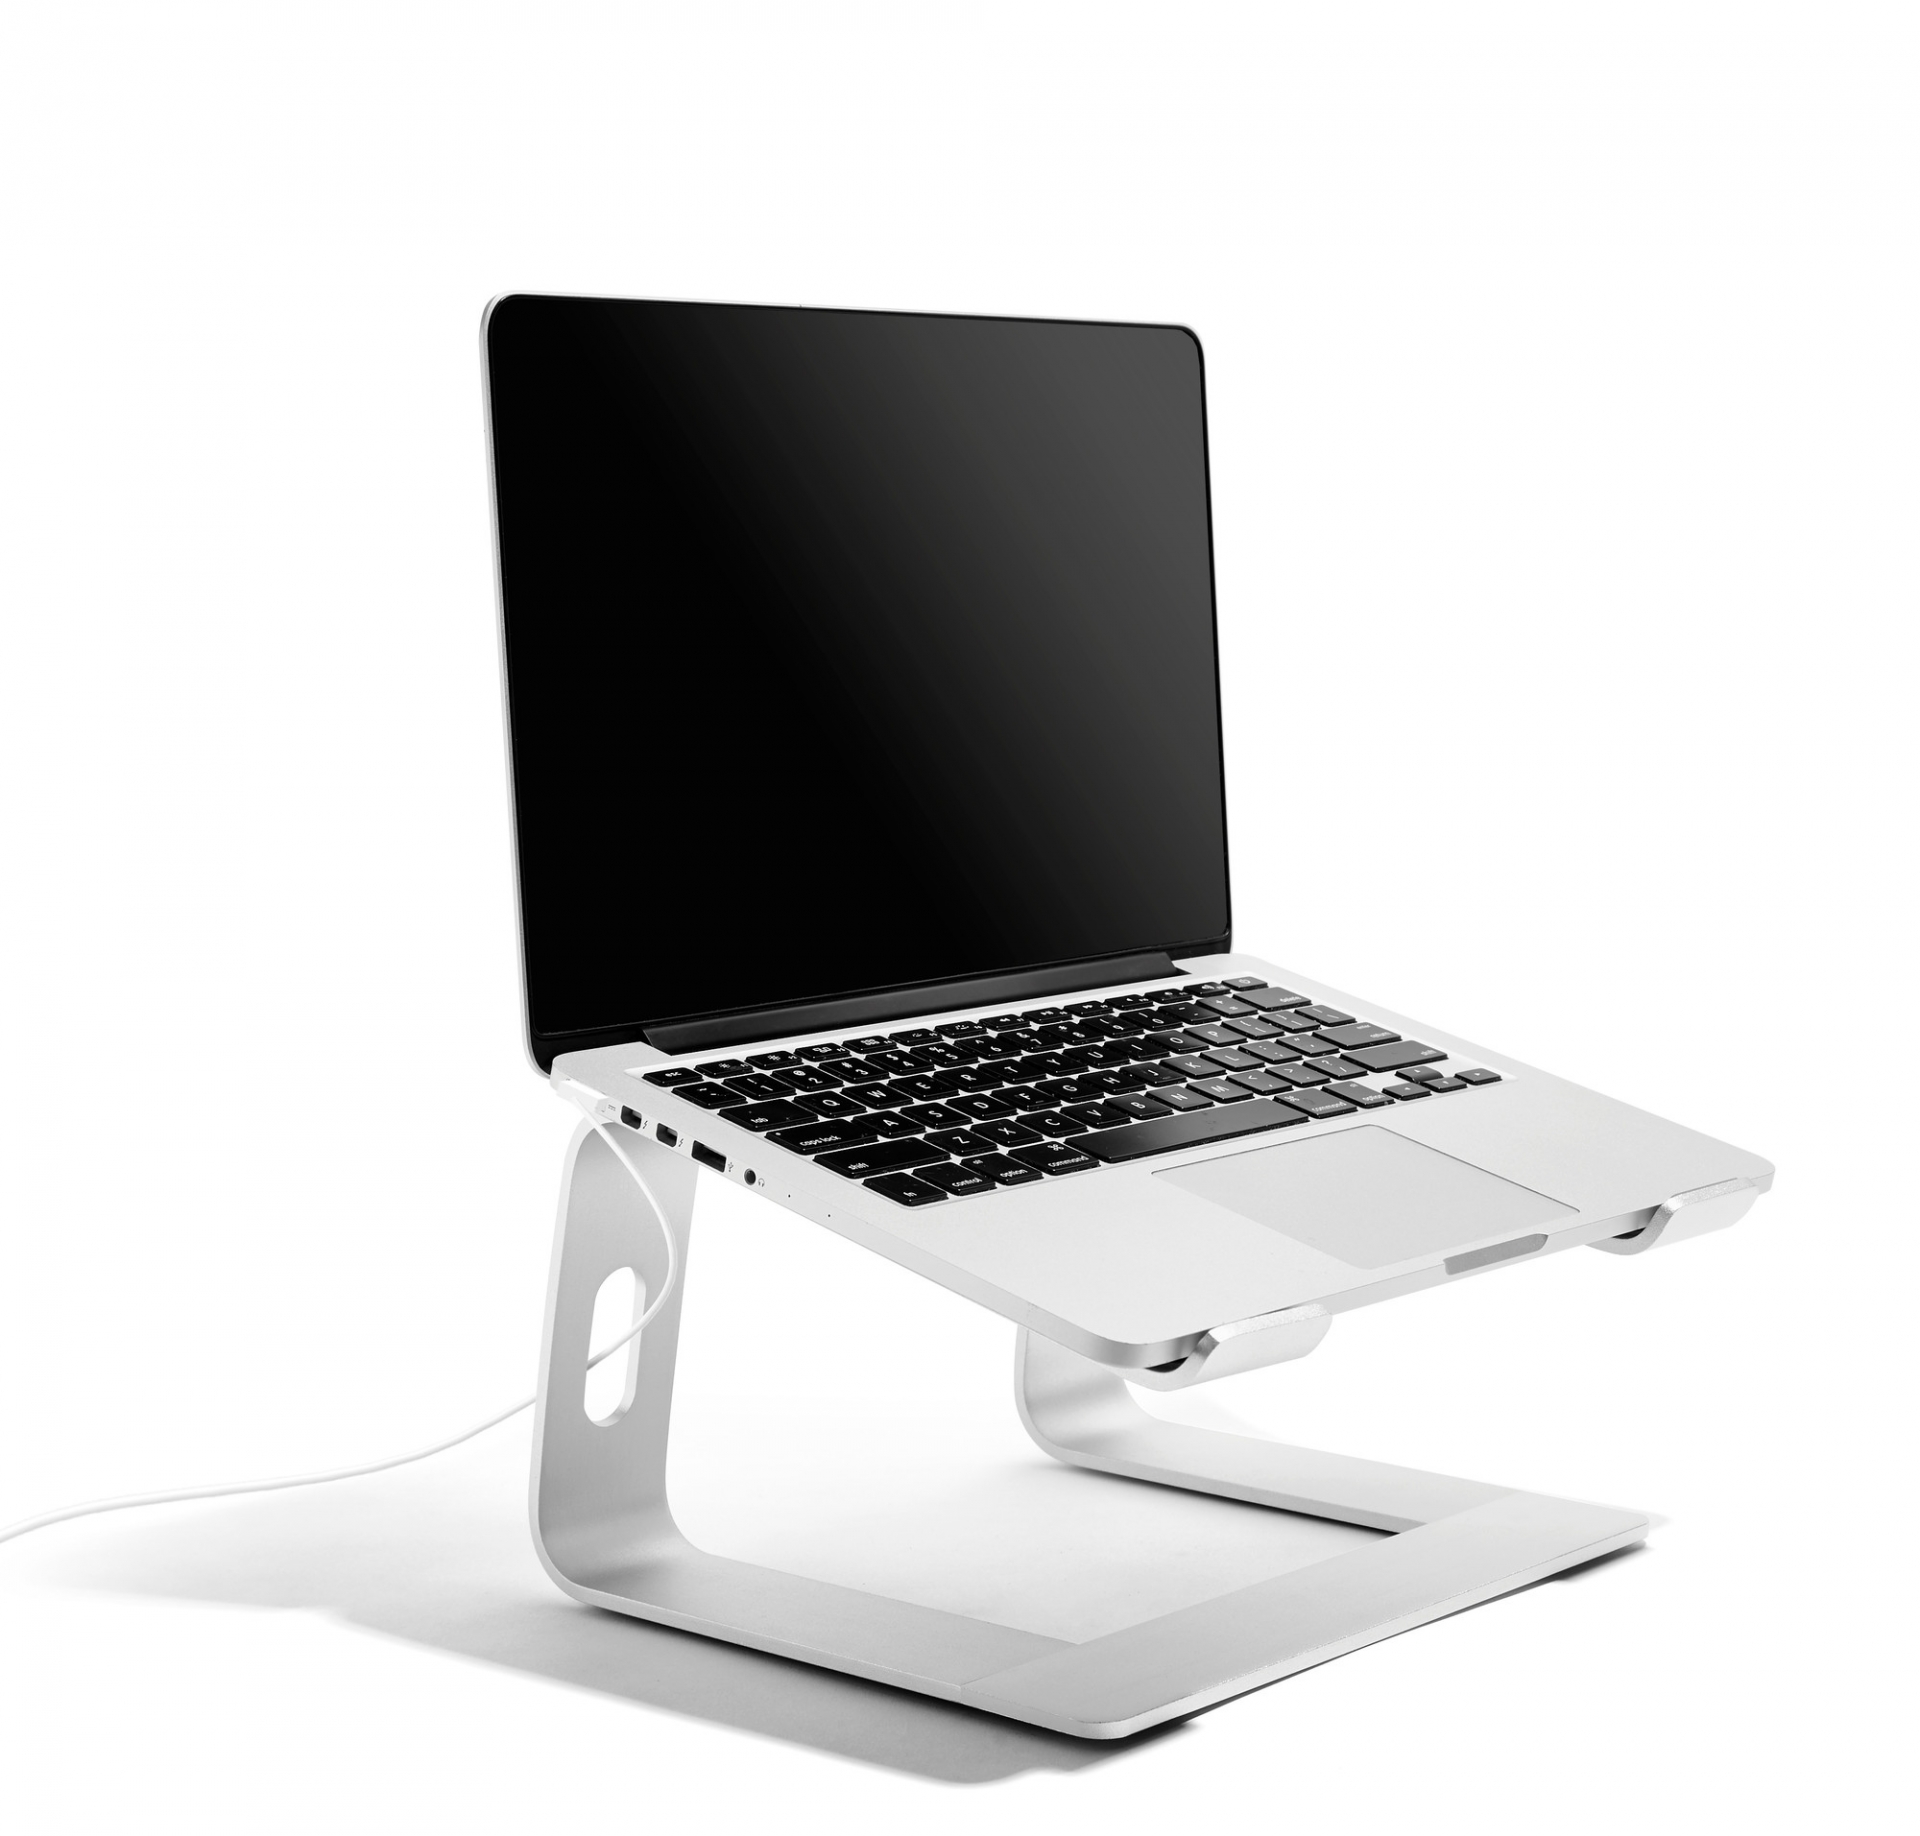 'Laptop Riser' màu bạc được thiết kế nhằm tạo sự thoải mái cho người sử dụng máy tính xách tay. Bạn có thể điều chỉnh độ cao tùy thích để phù hợp với không gian làm việc của mình. Đế được làm bằng hợp kim nhôm chắc chắn, lắp ráp dễ dàng. Giá tham khảo: 4.5 triệu đồng.